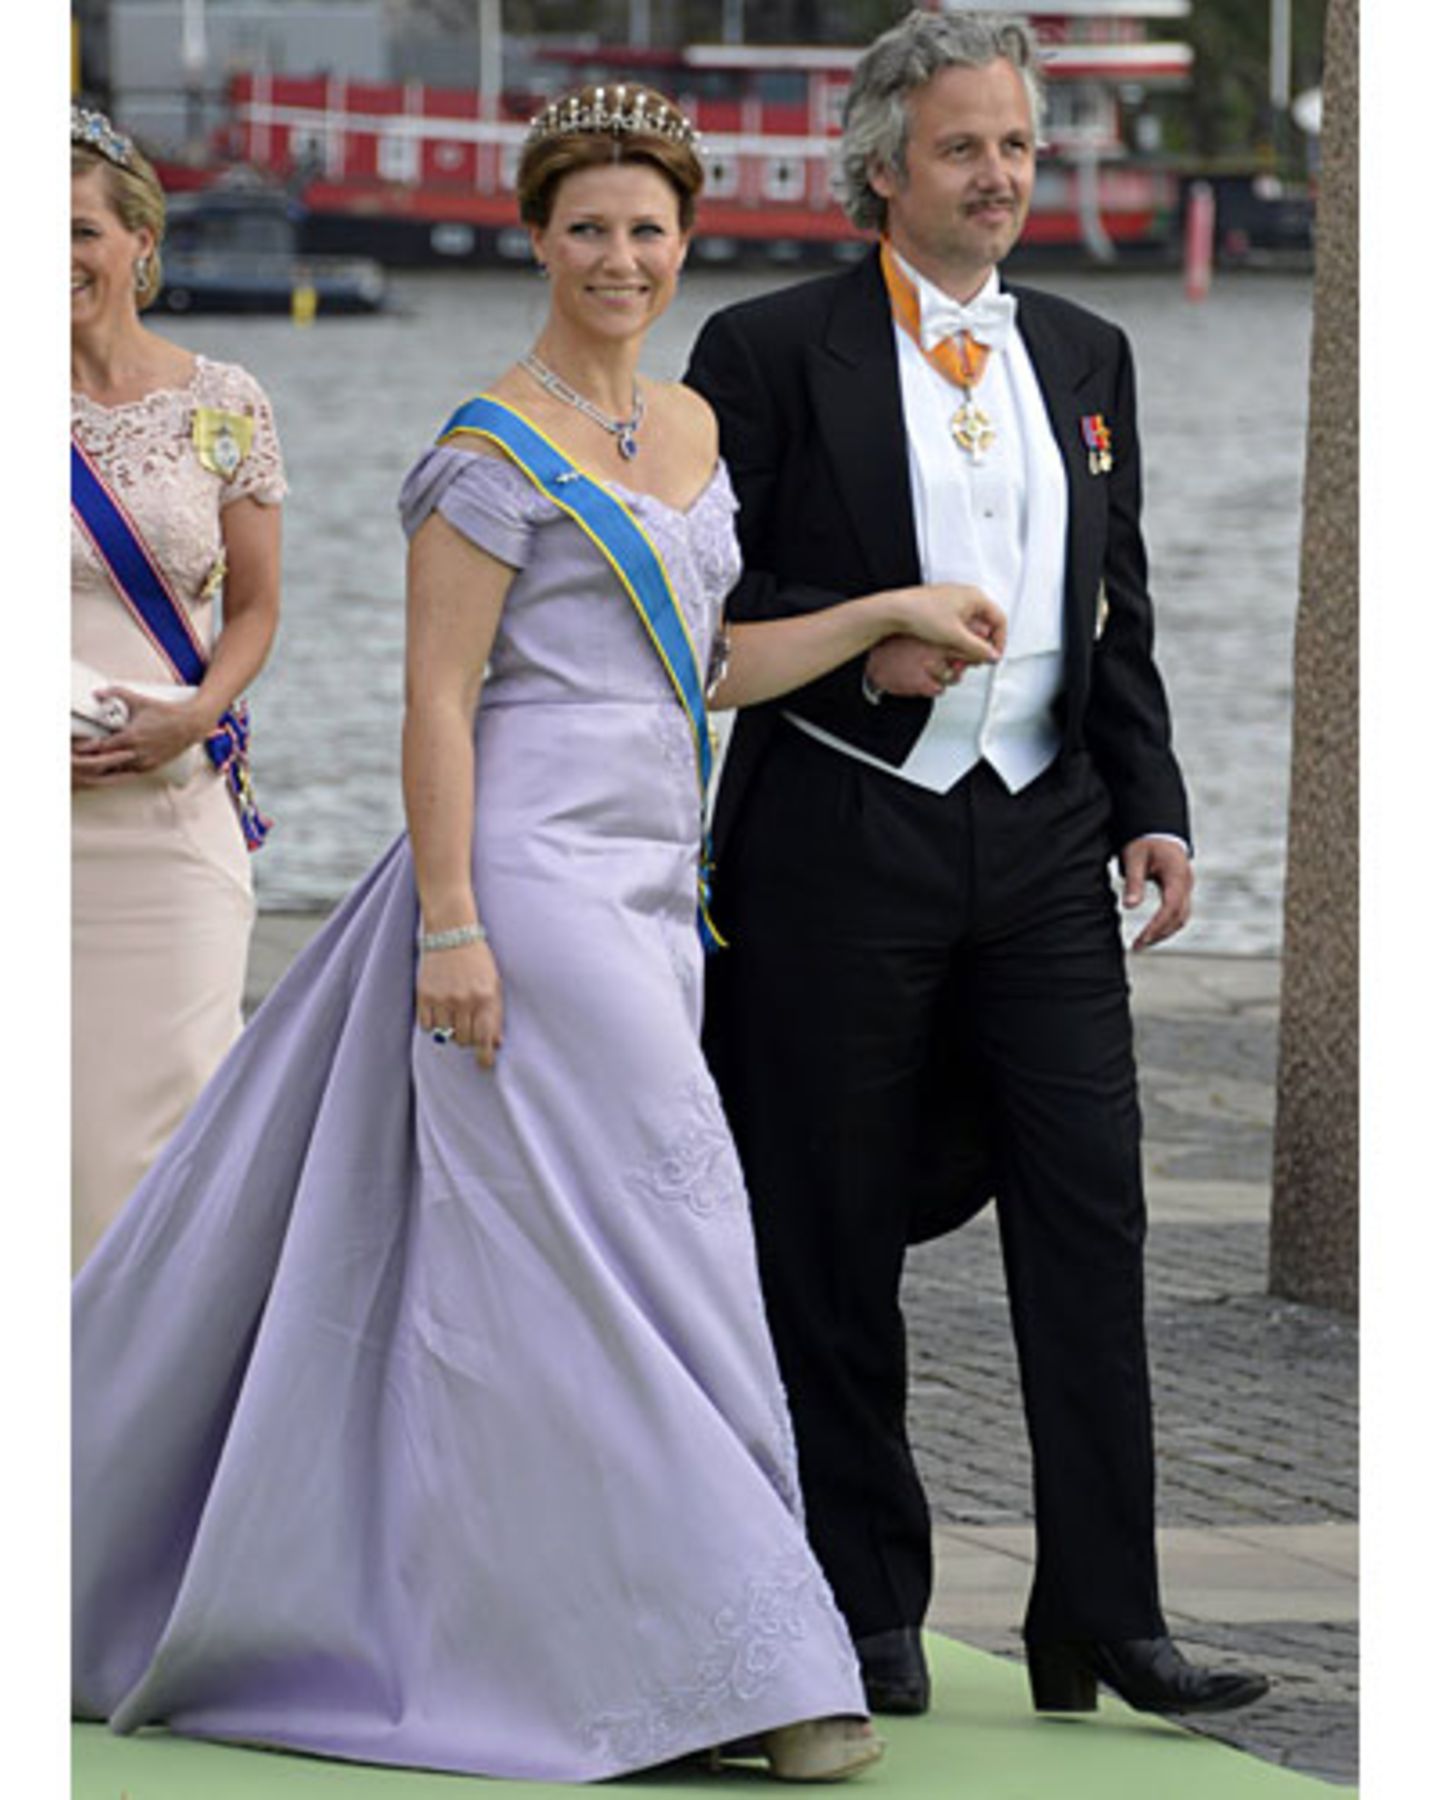 Prinzessin Märtha Louise von Norwegen und Arie Behn